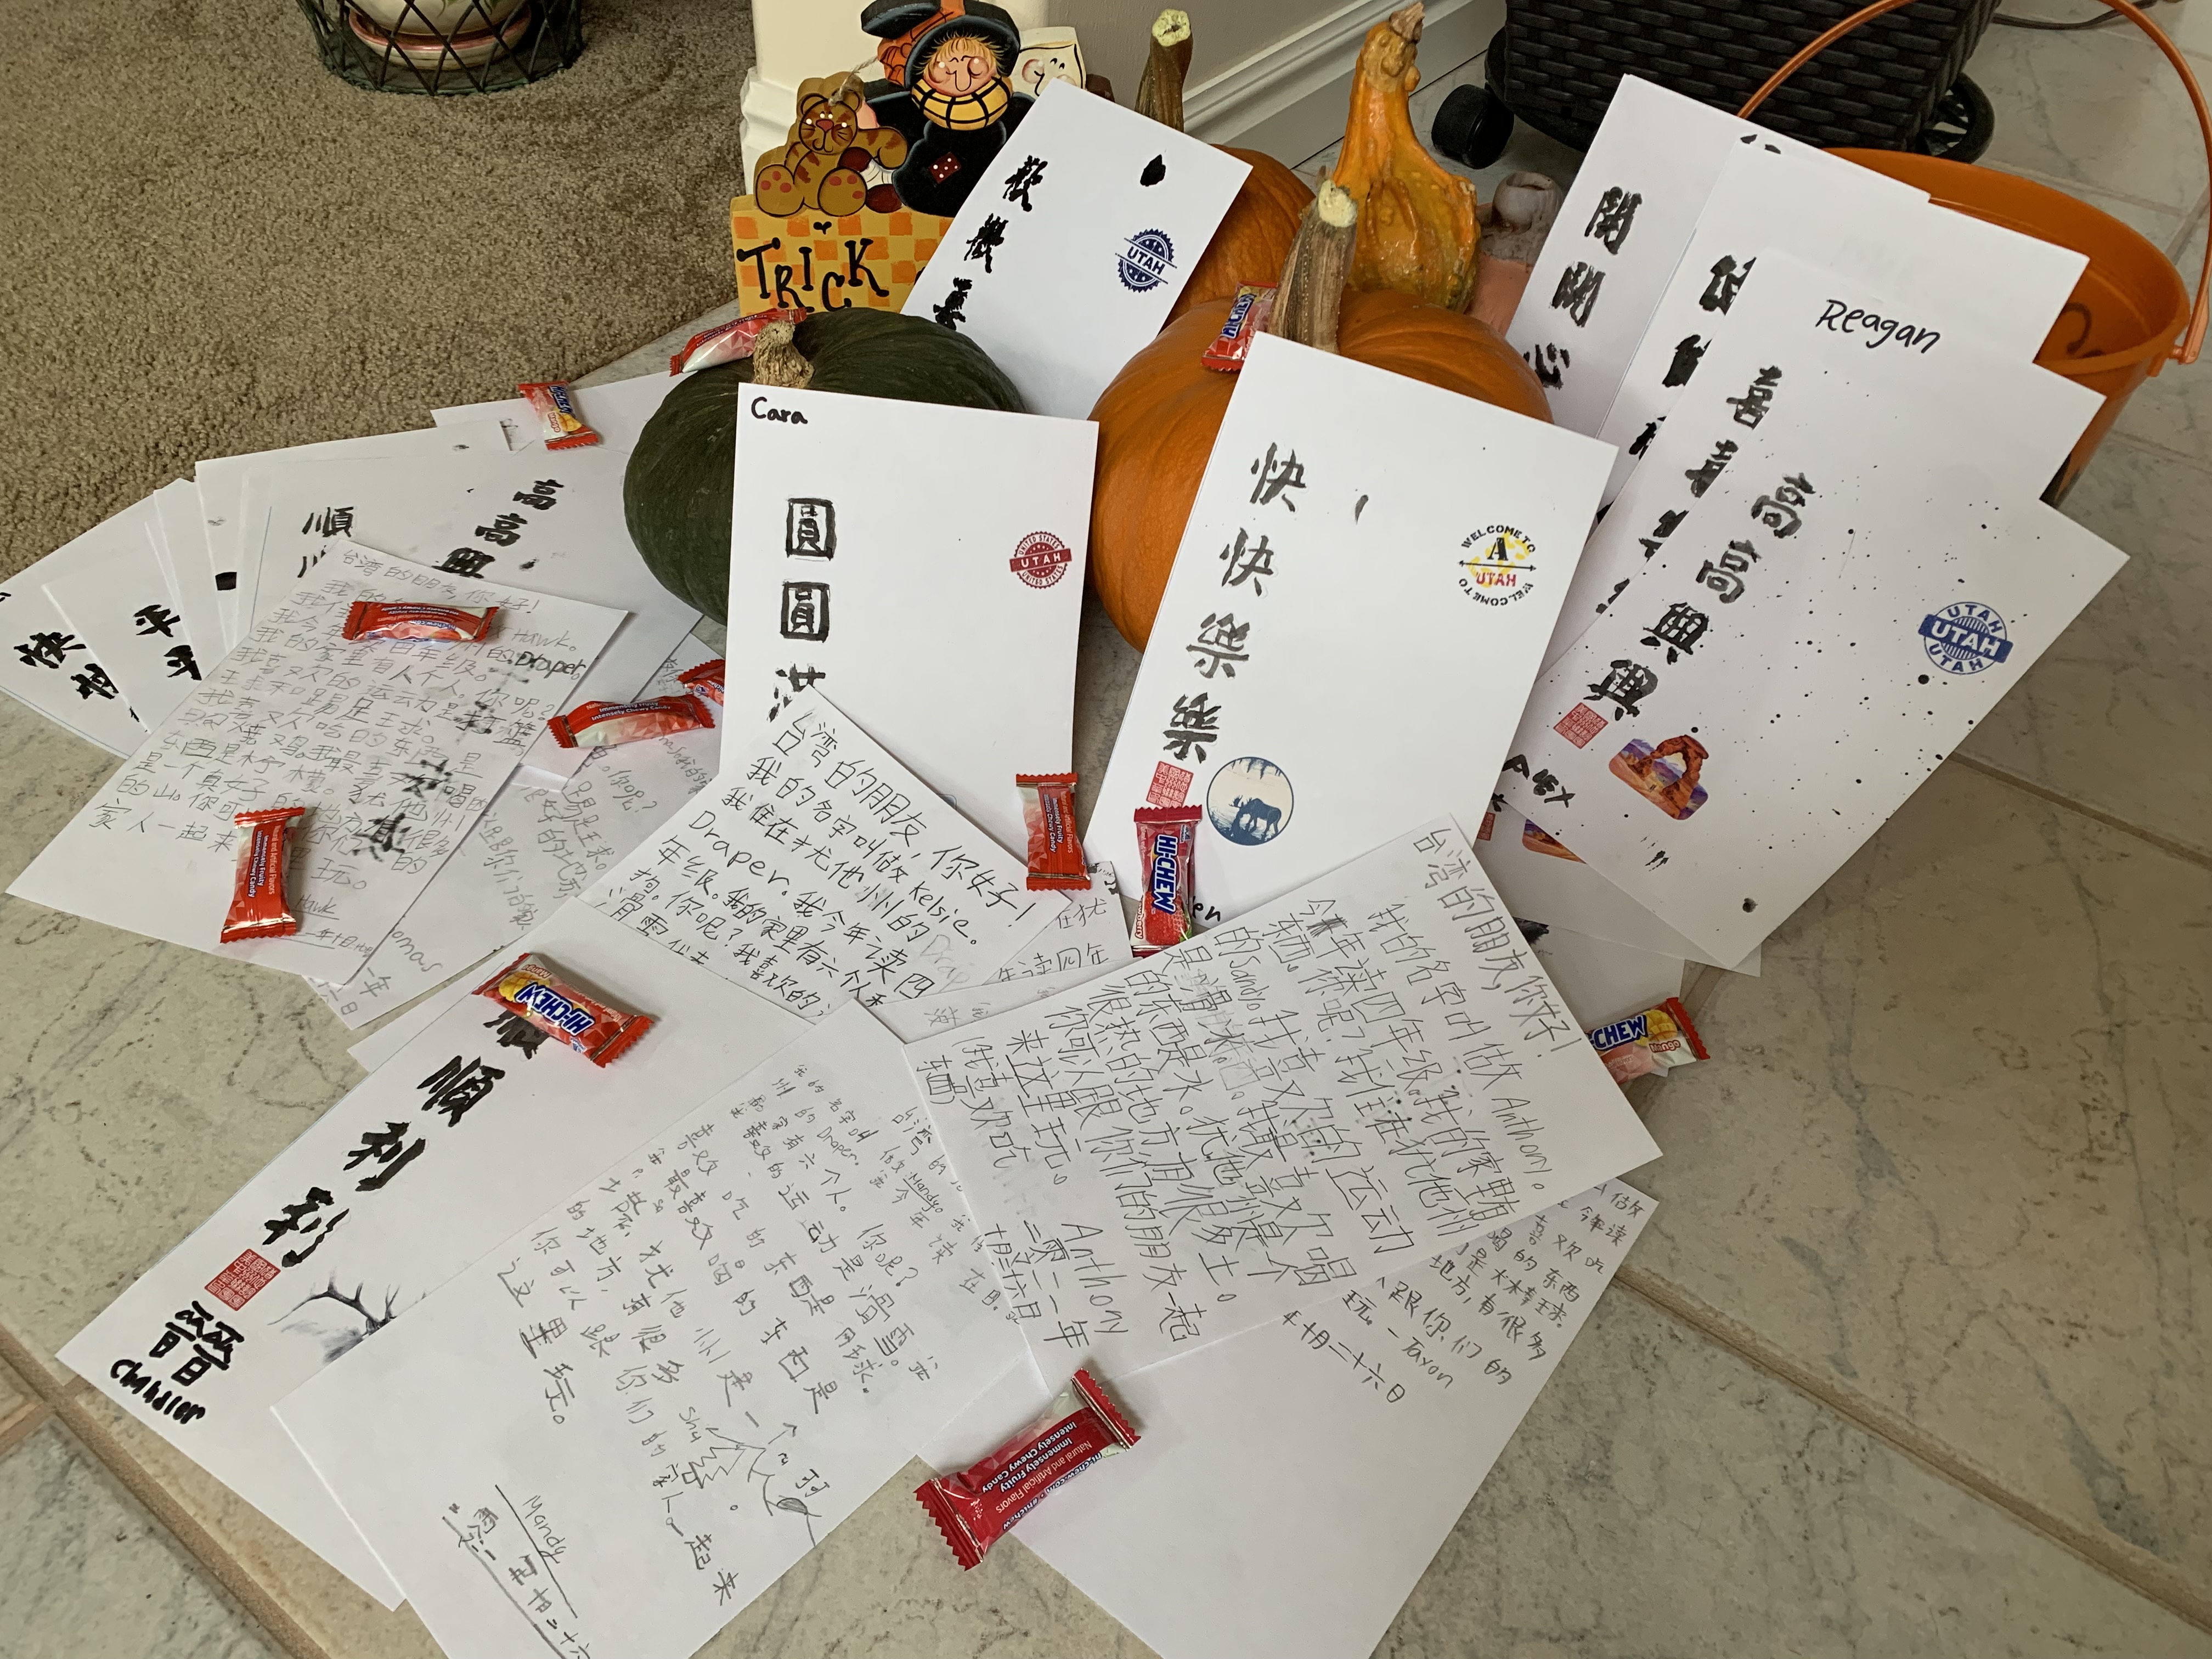 猶他Draper小學學生寫下對臺灣筆友的祝福